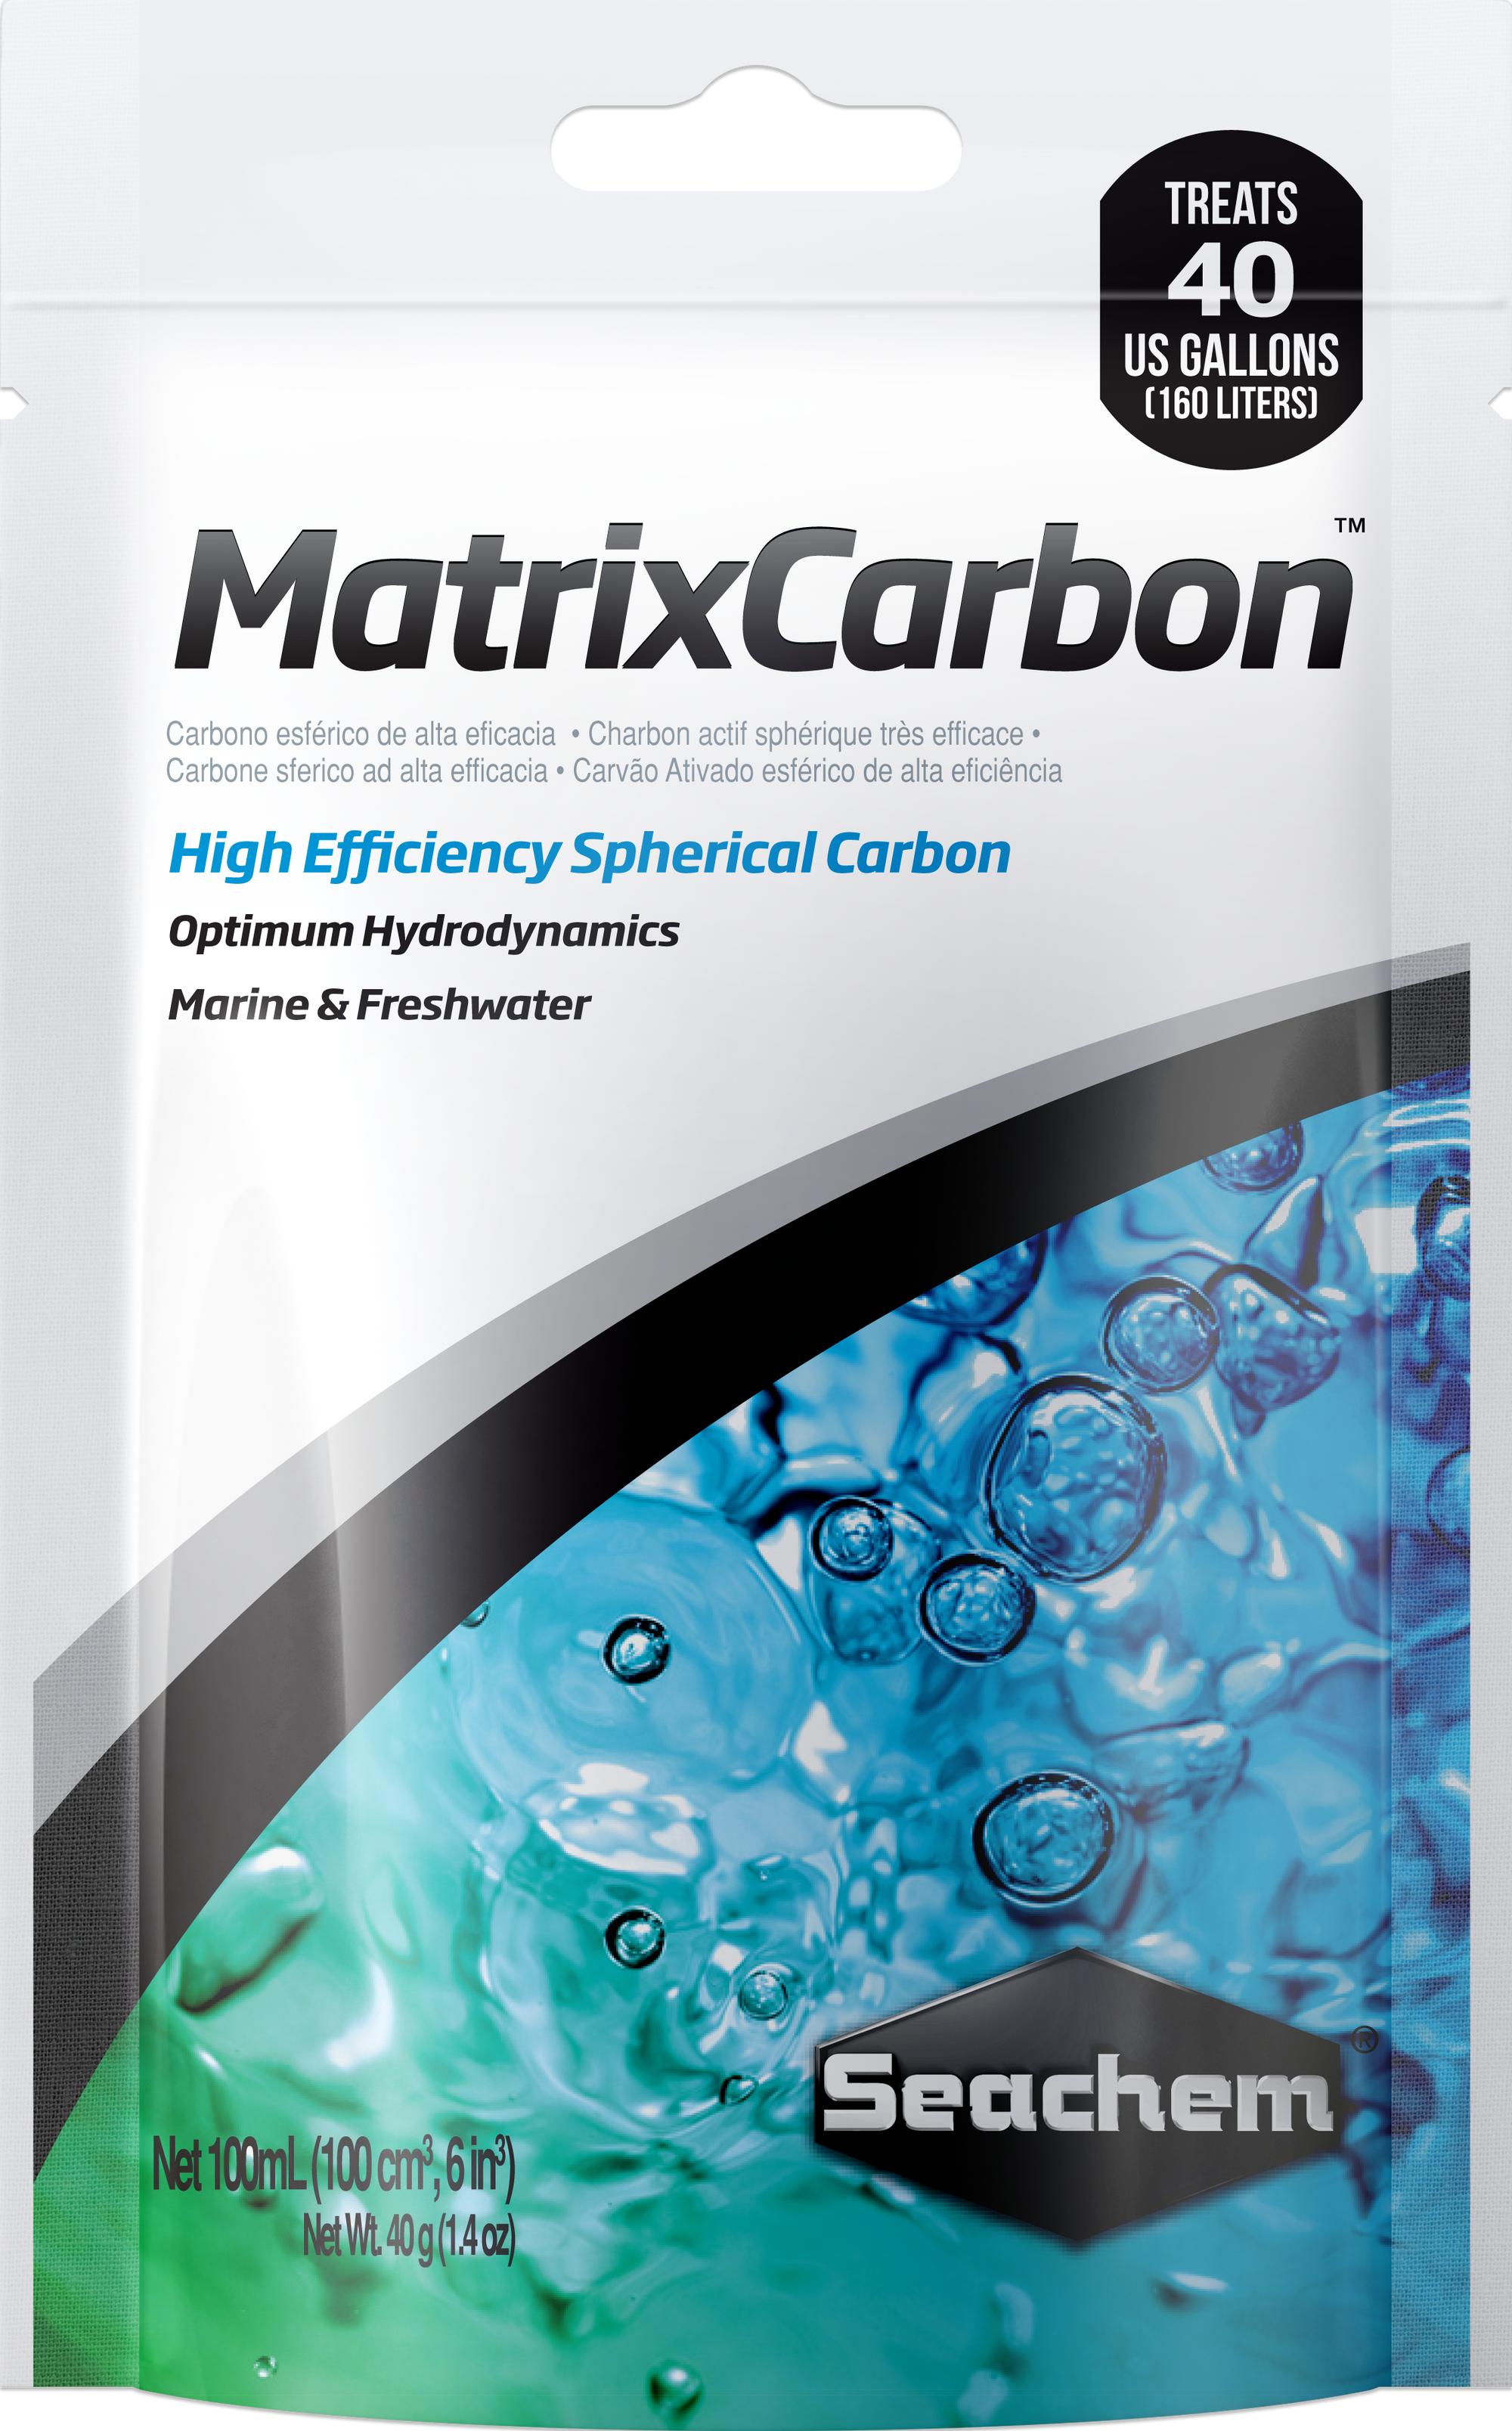 Matrix Carbon